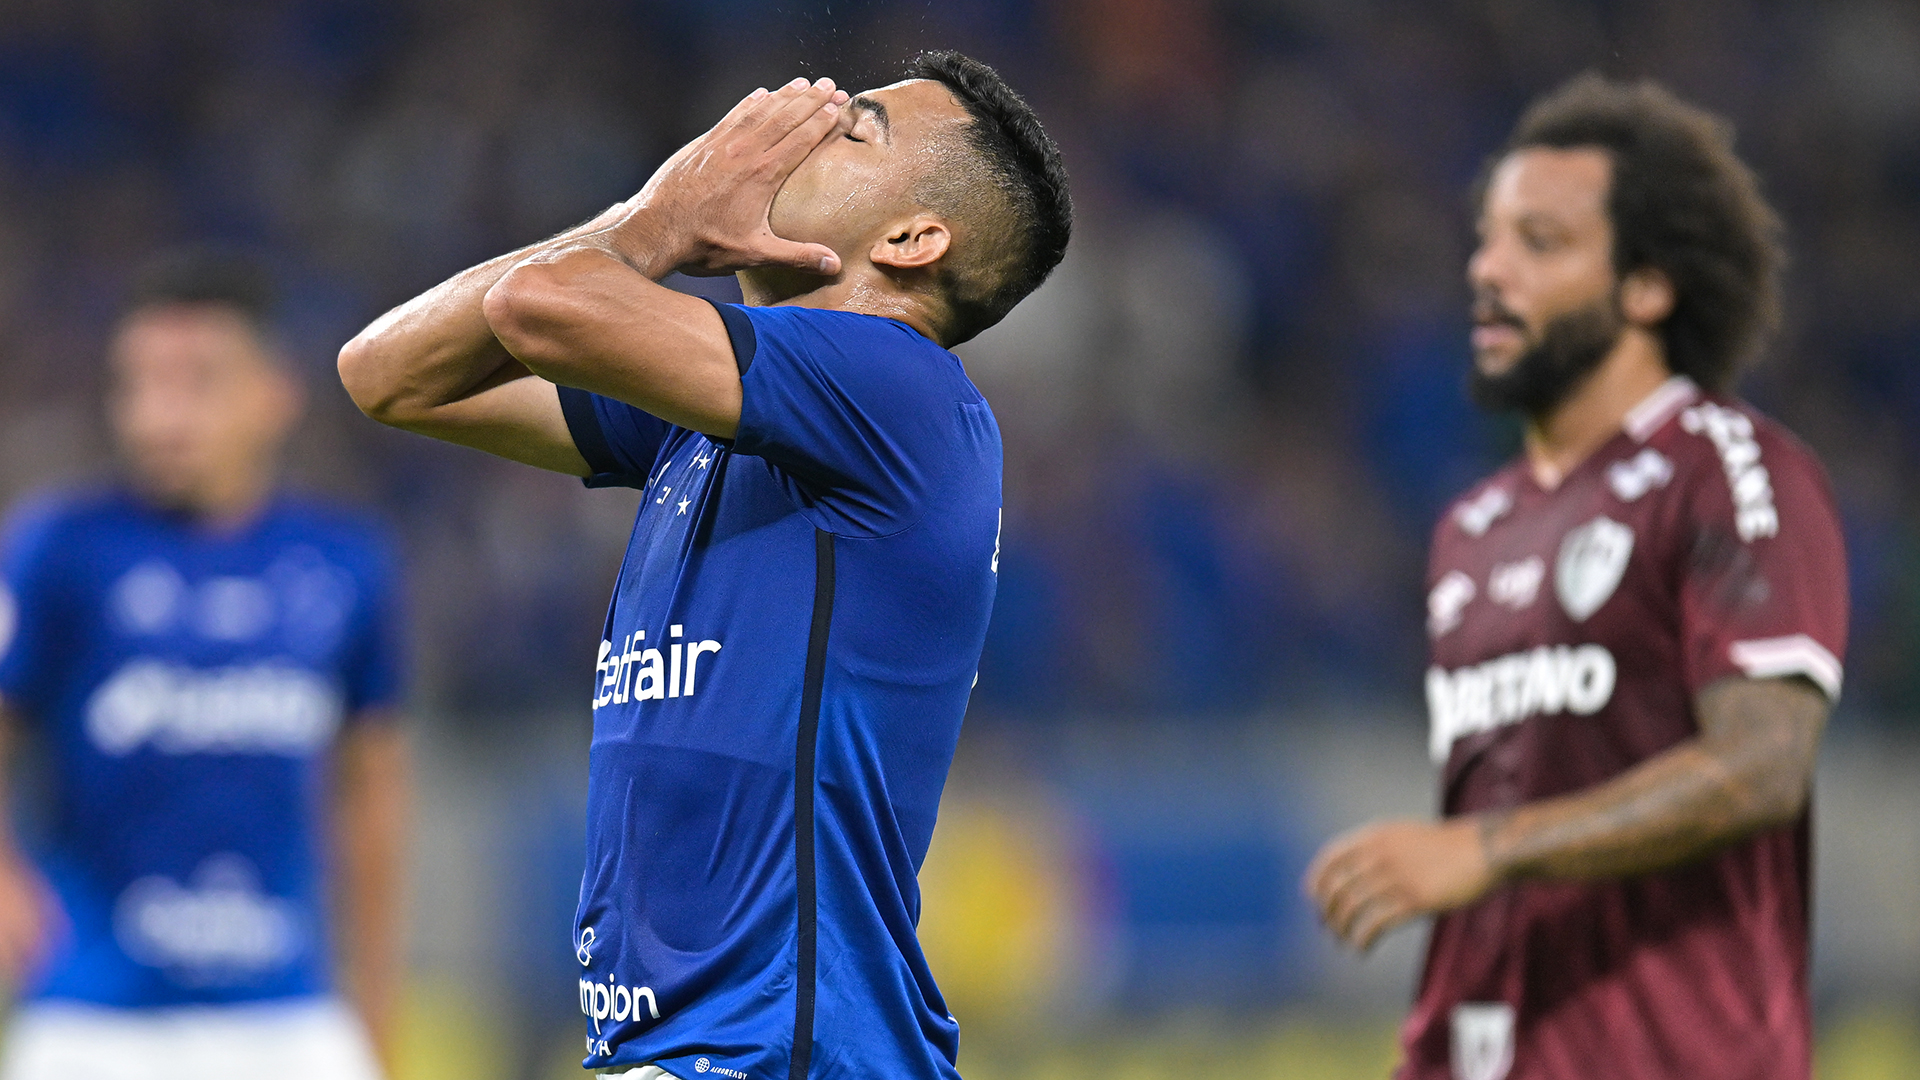 Bruno Rodrigues, jugador de Cruzeiro, falló dos penales tras pelearse con un compañero para ejecutarlos (Getty Images)